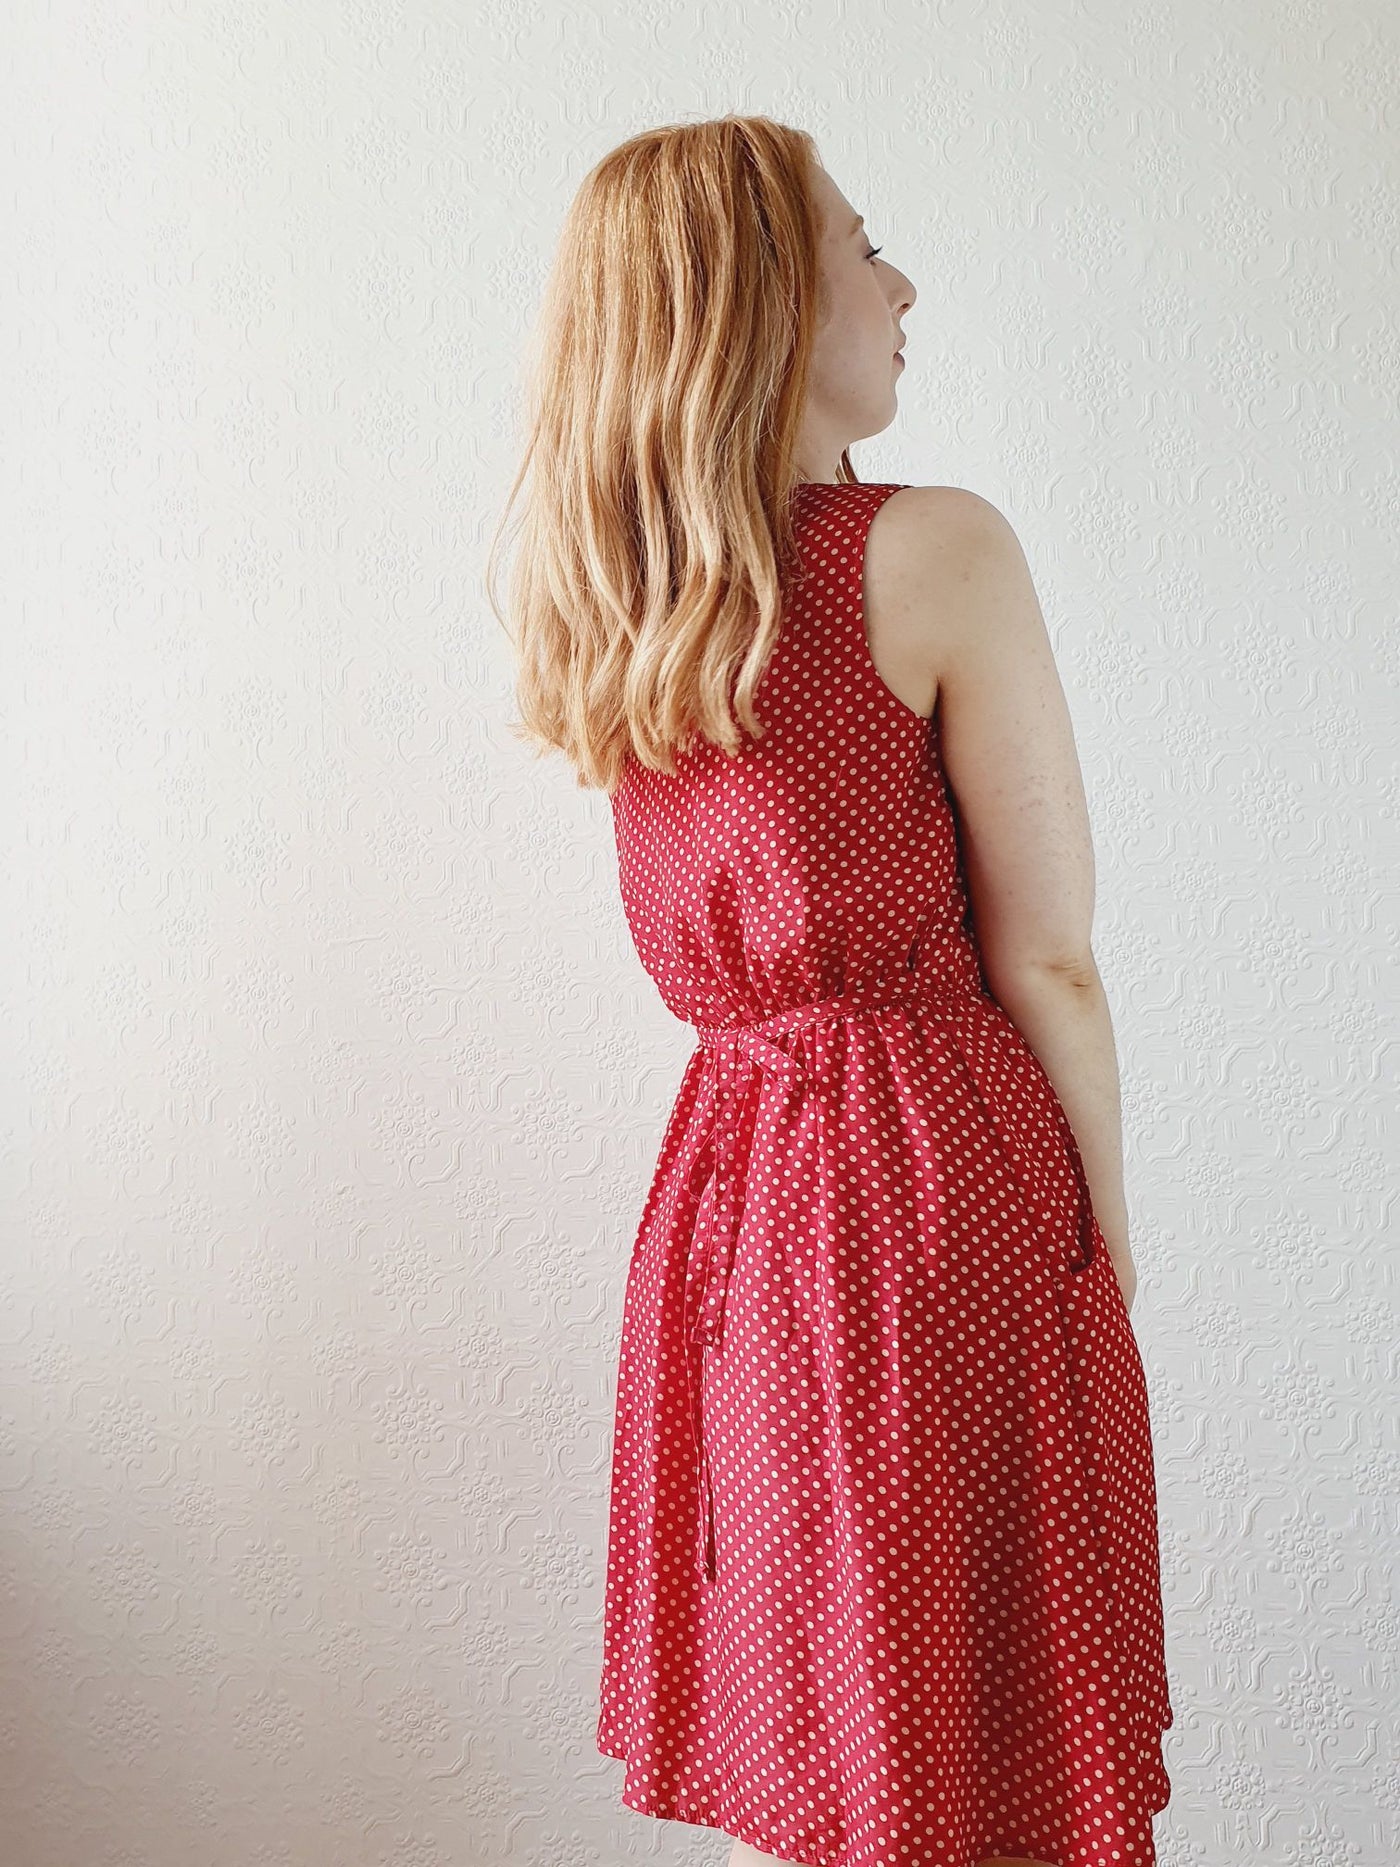 Vintage Red Polka Dot Dress - S